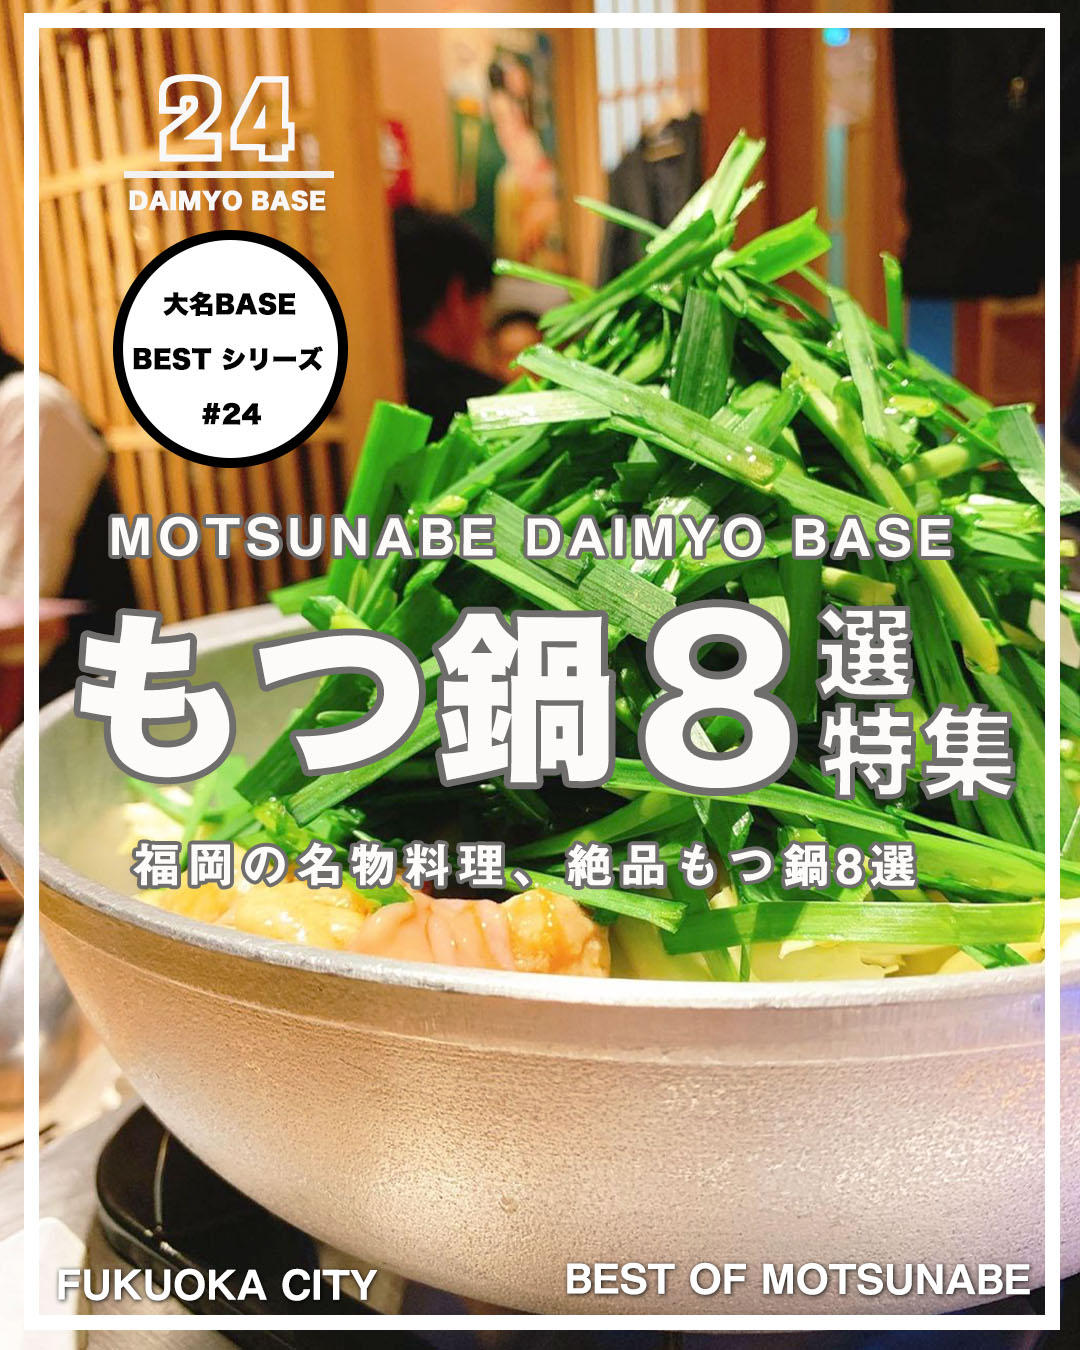 福岡の名物料理 もつ鍋 地元民からも愛される厳選 人気店舗 8選 大名base Daimyo Base